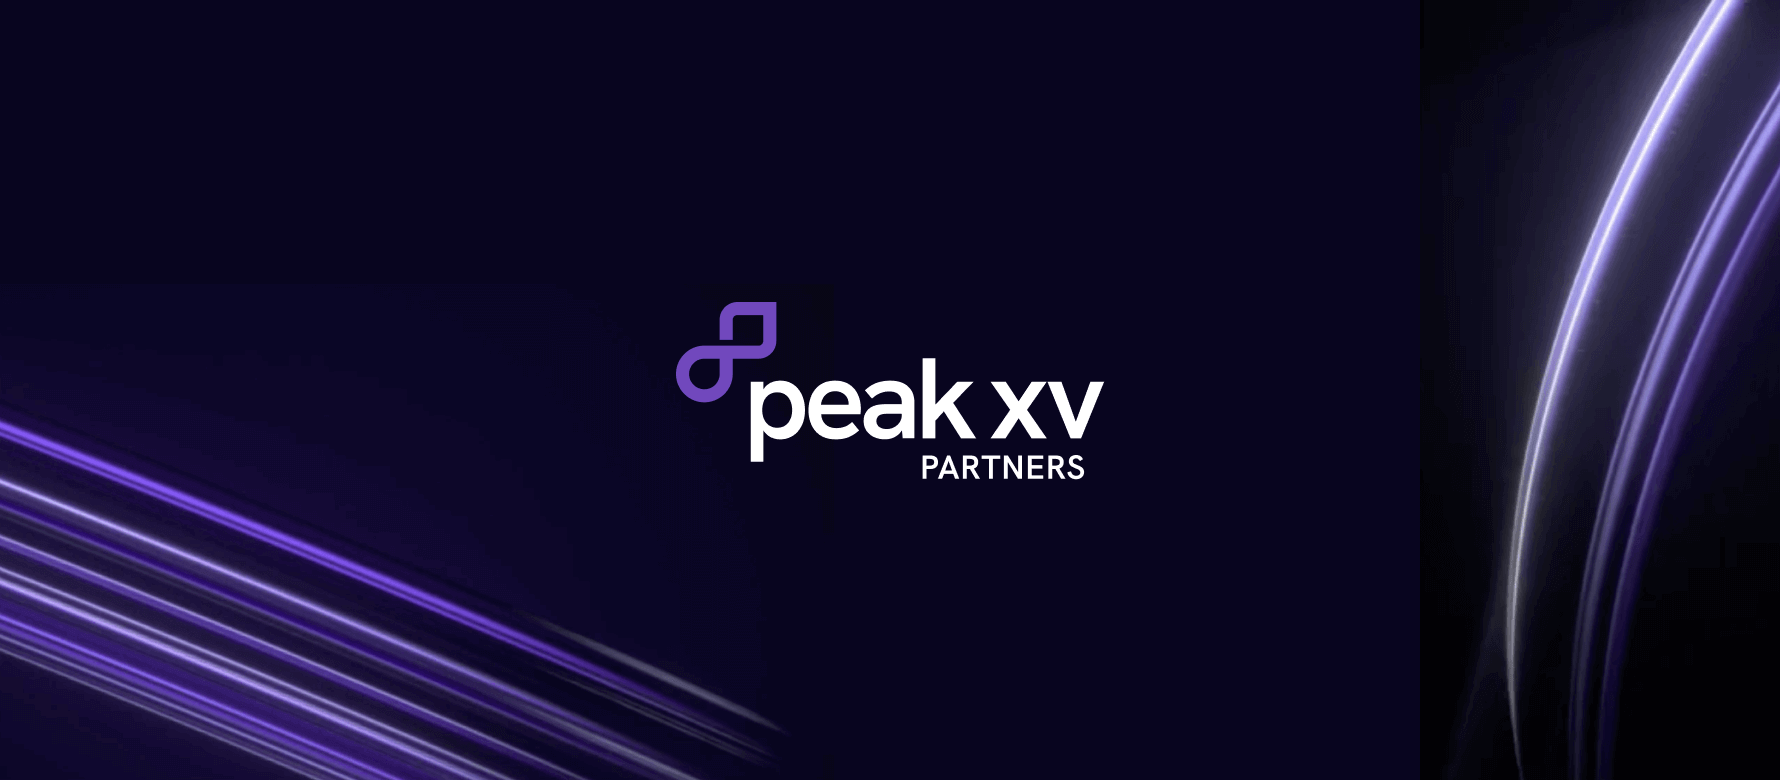 Banner image for Peak xv 